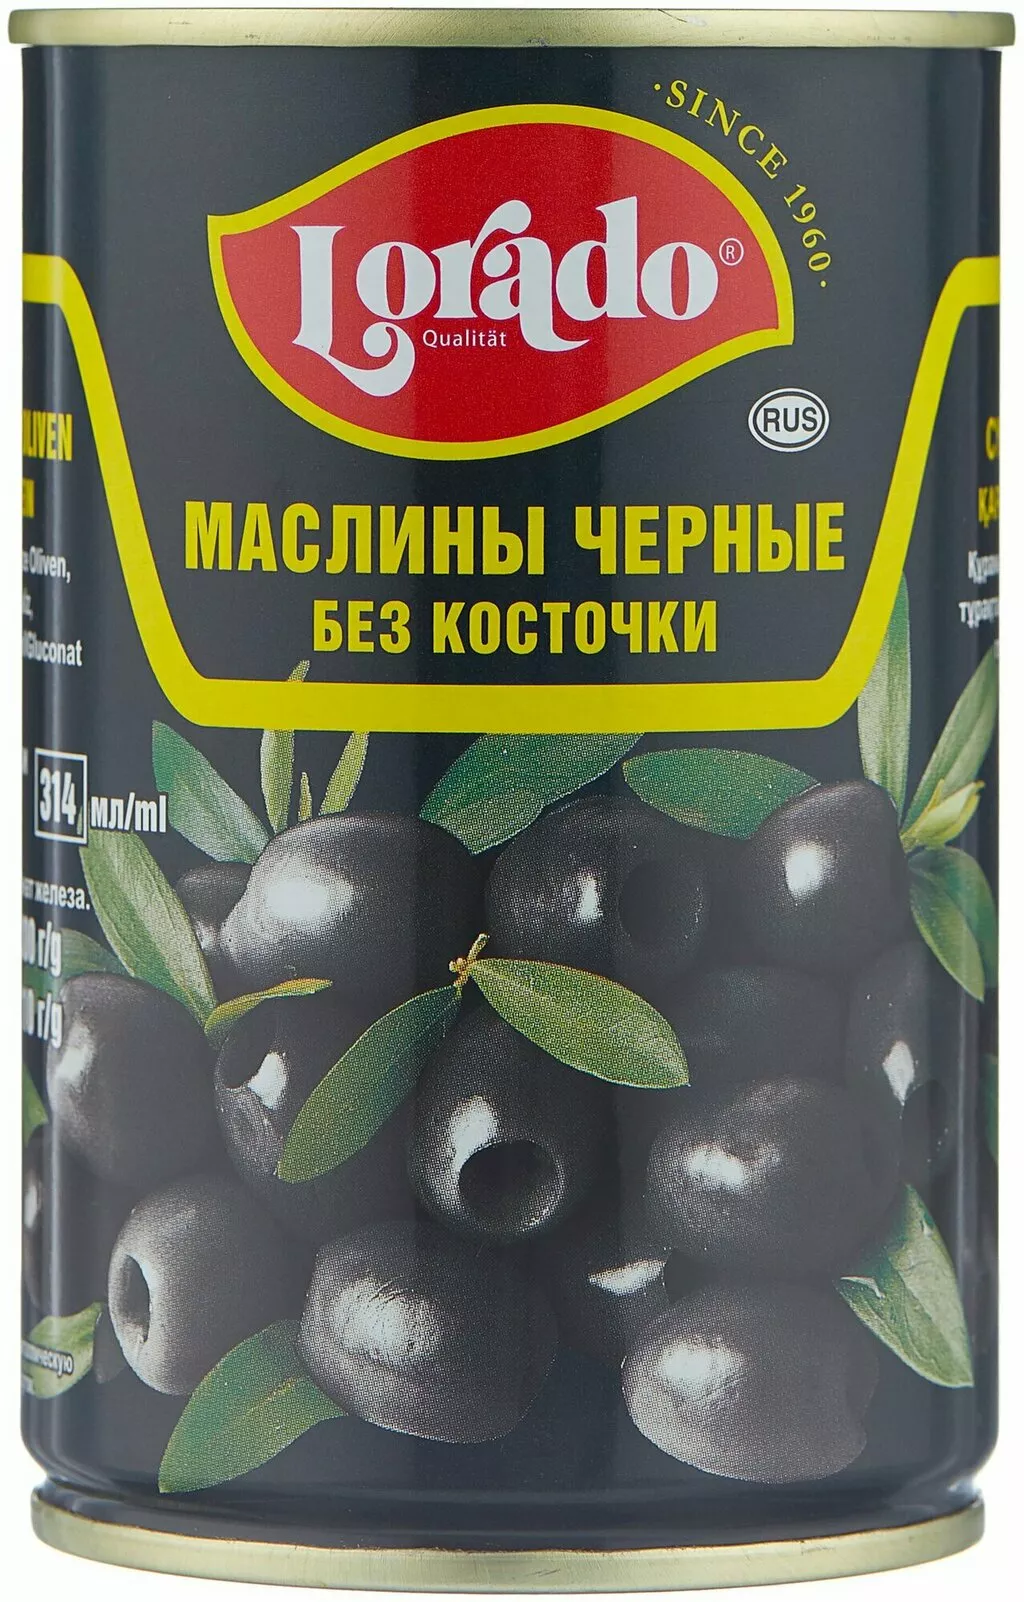 просрок оливок, маслин опт.  в Москве и Московской области 5